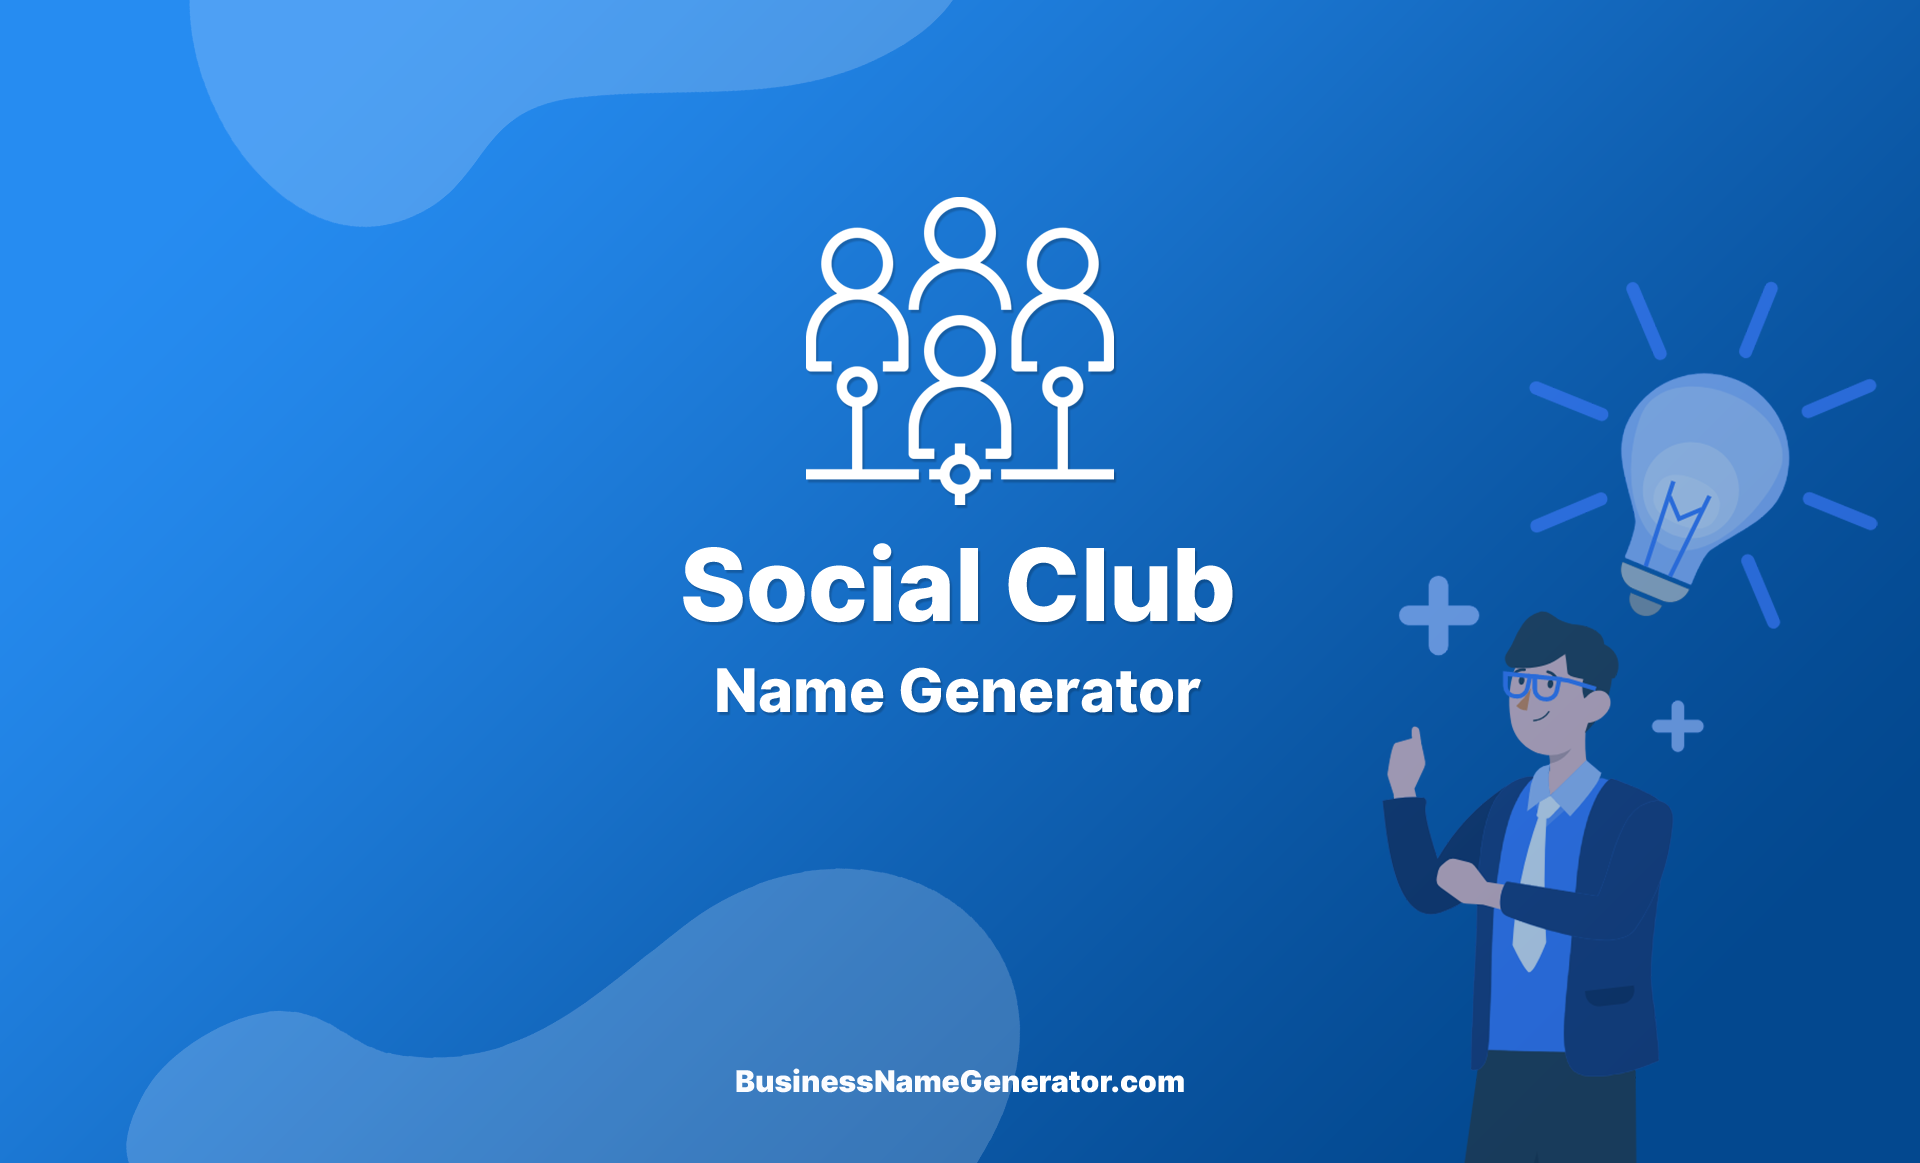 Social Club Name Generator